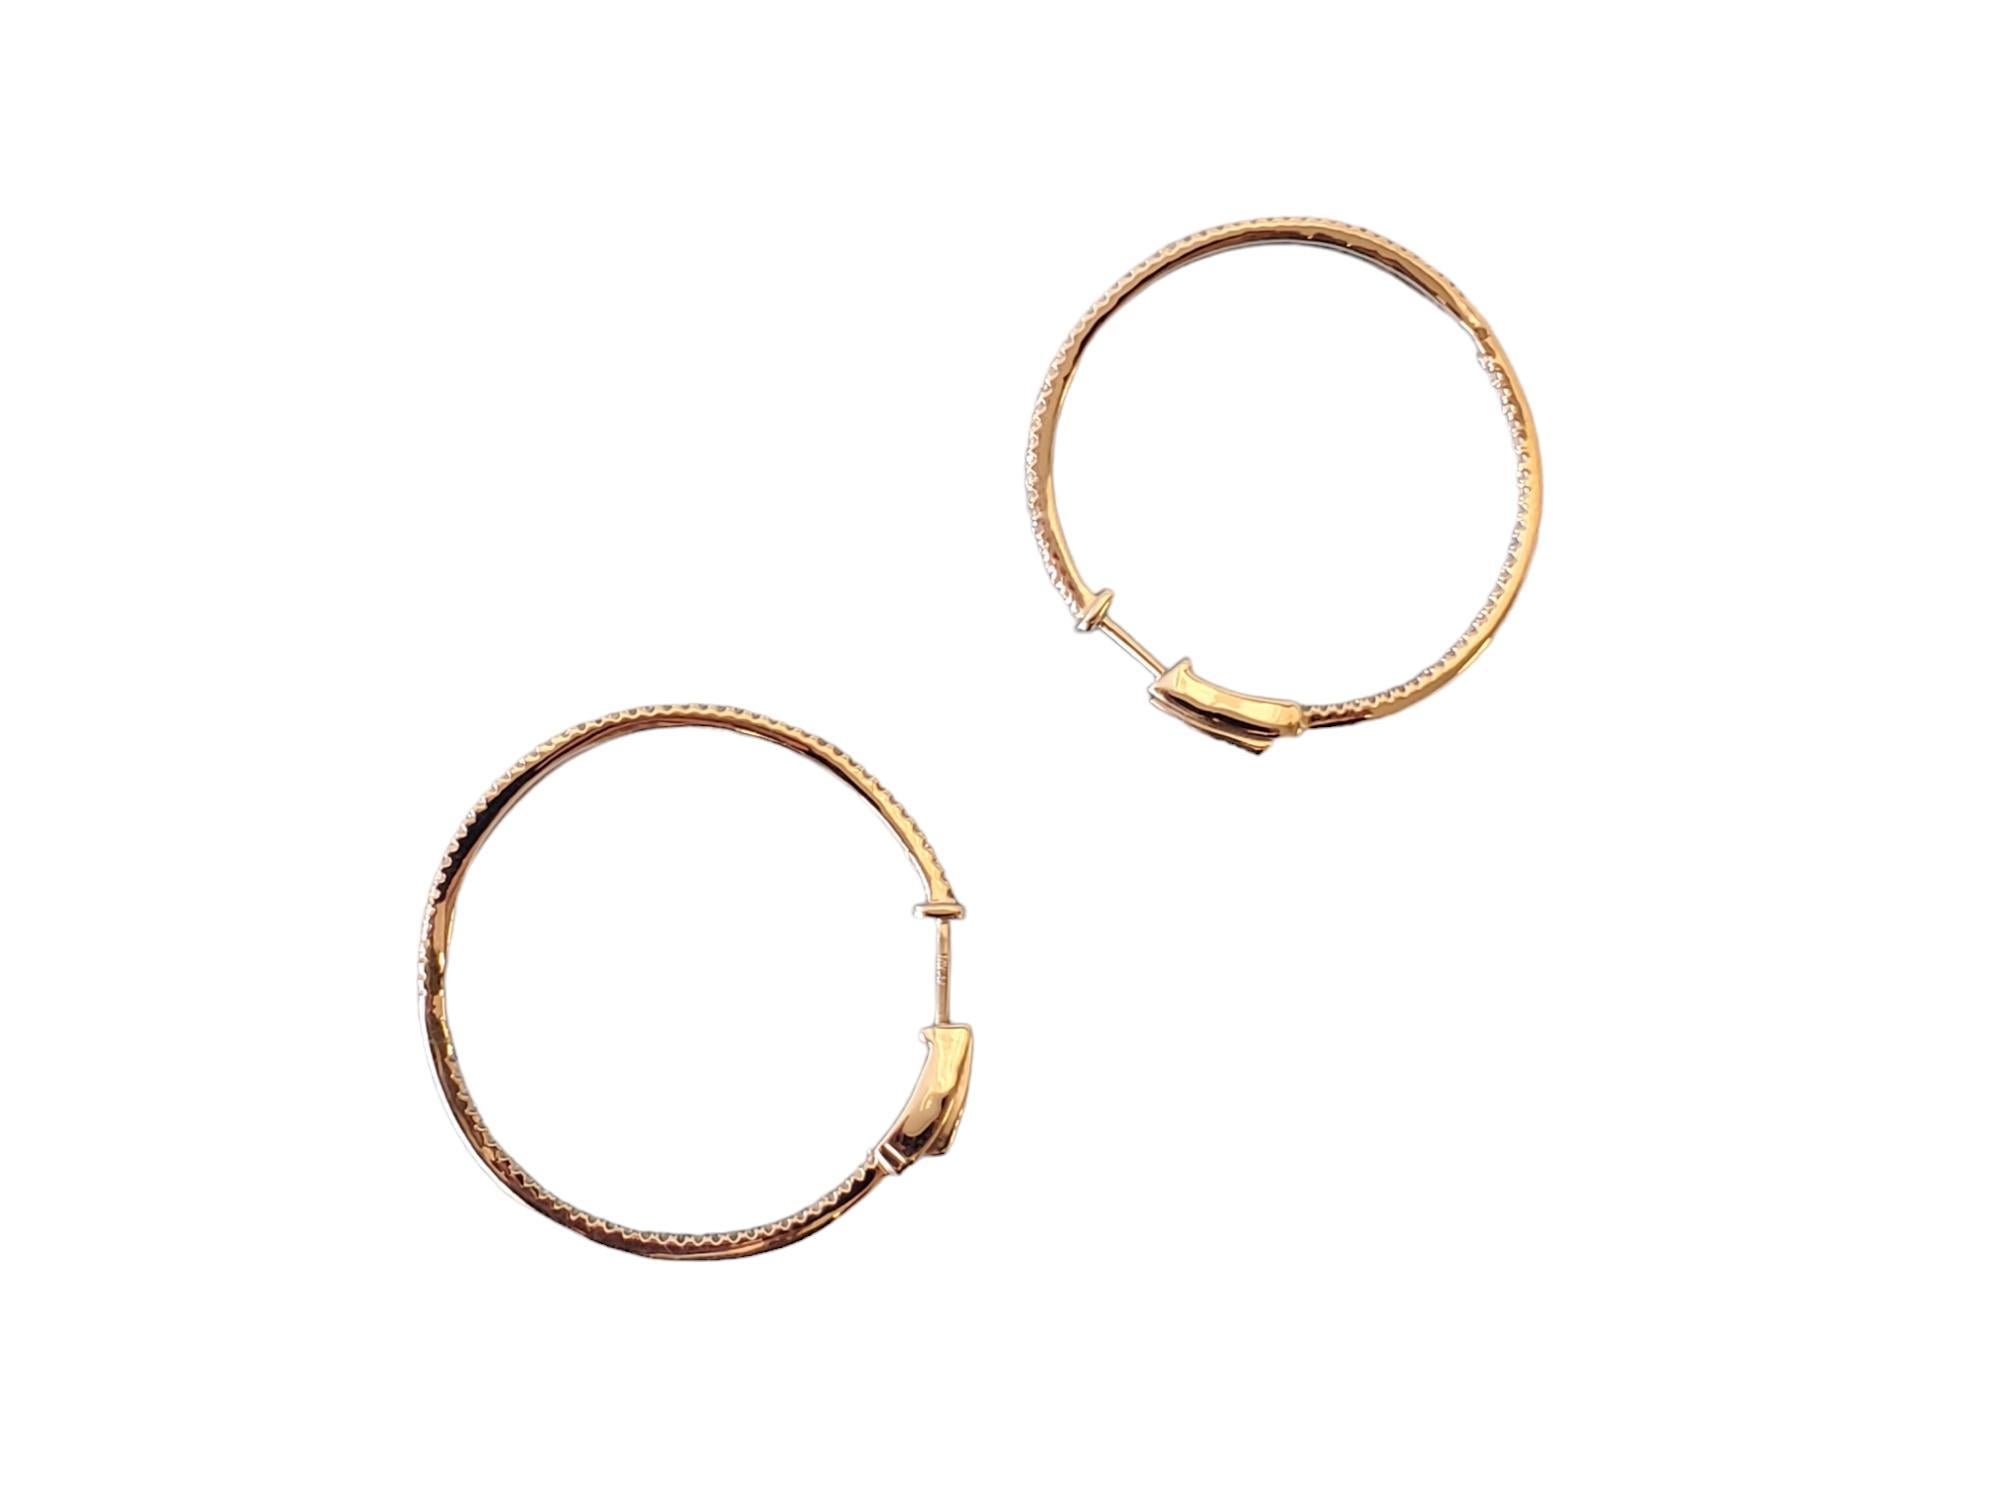 Diamond Hoop Earrings Inside Out 10k White Gold 1.00tcw 1.5